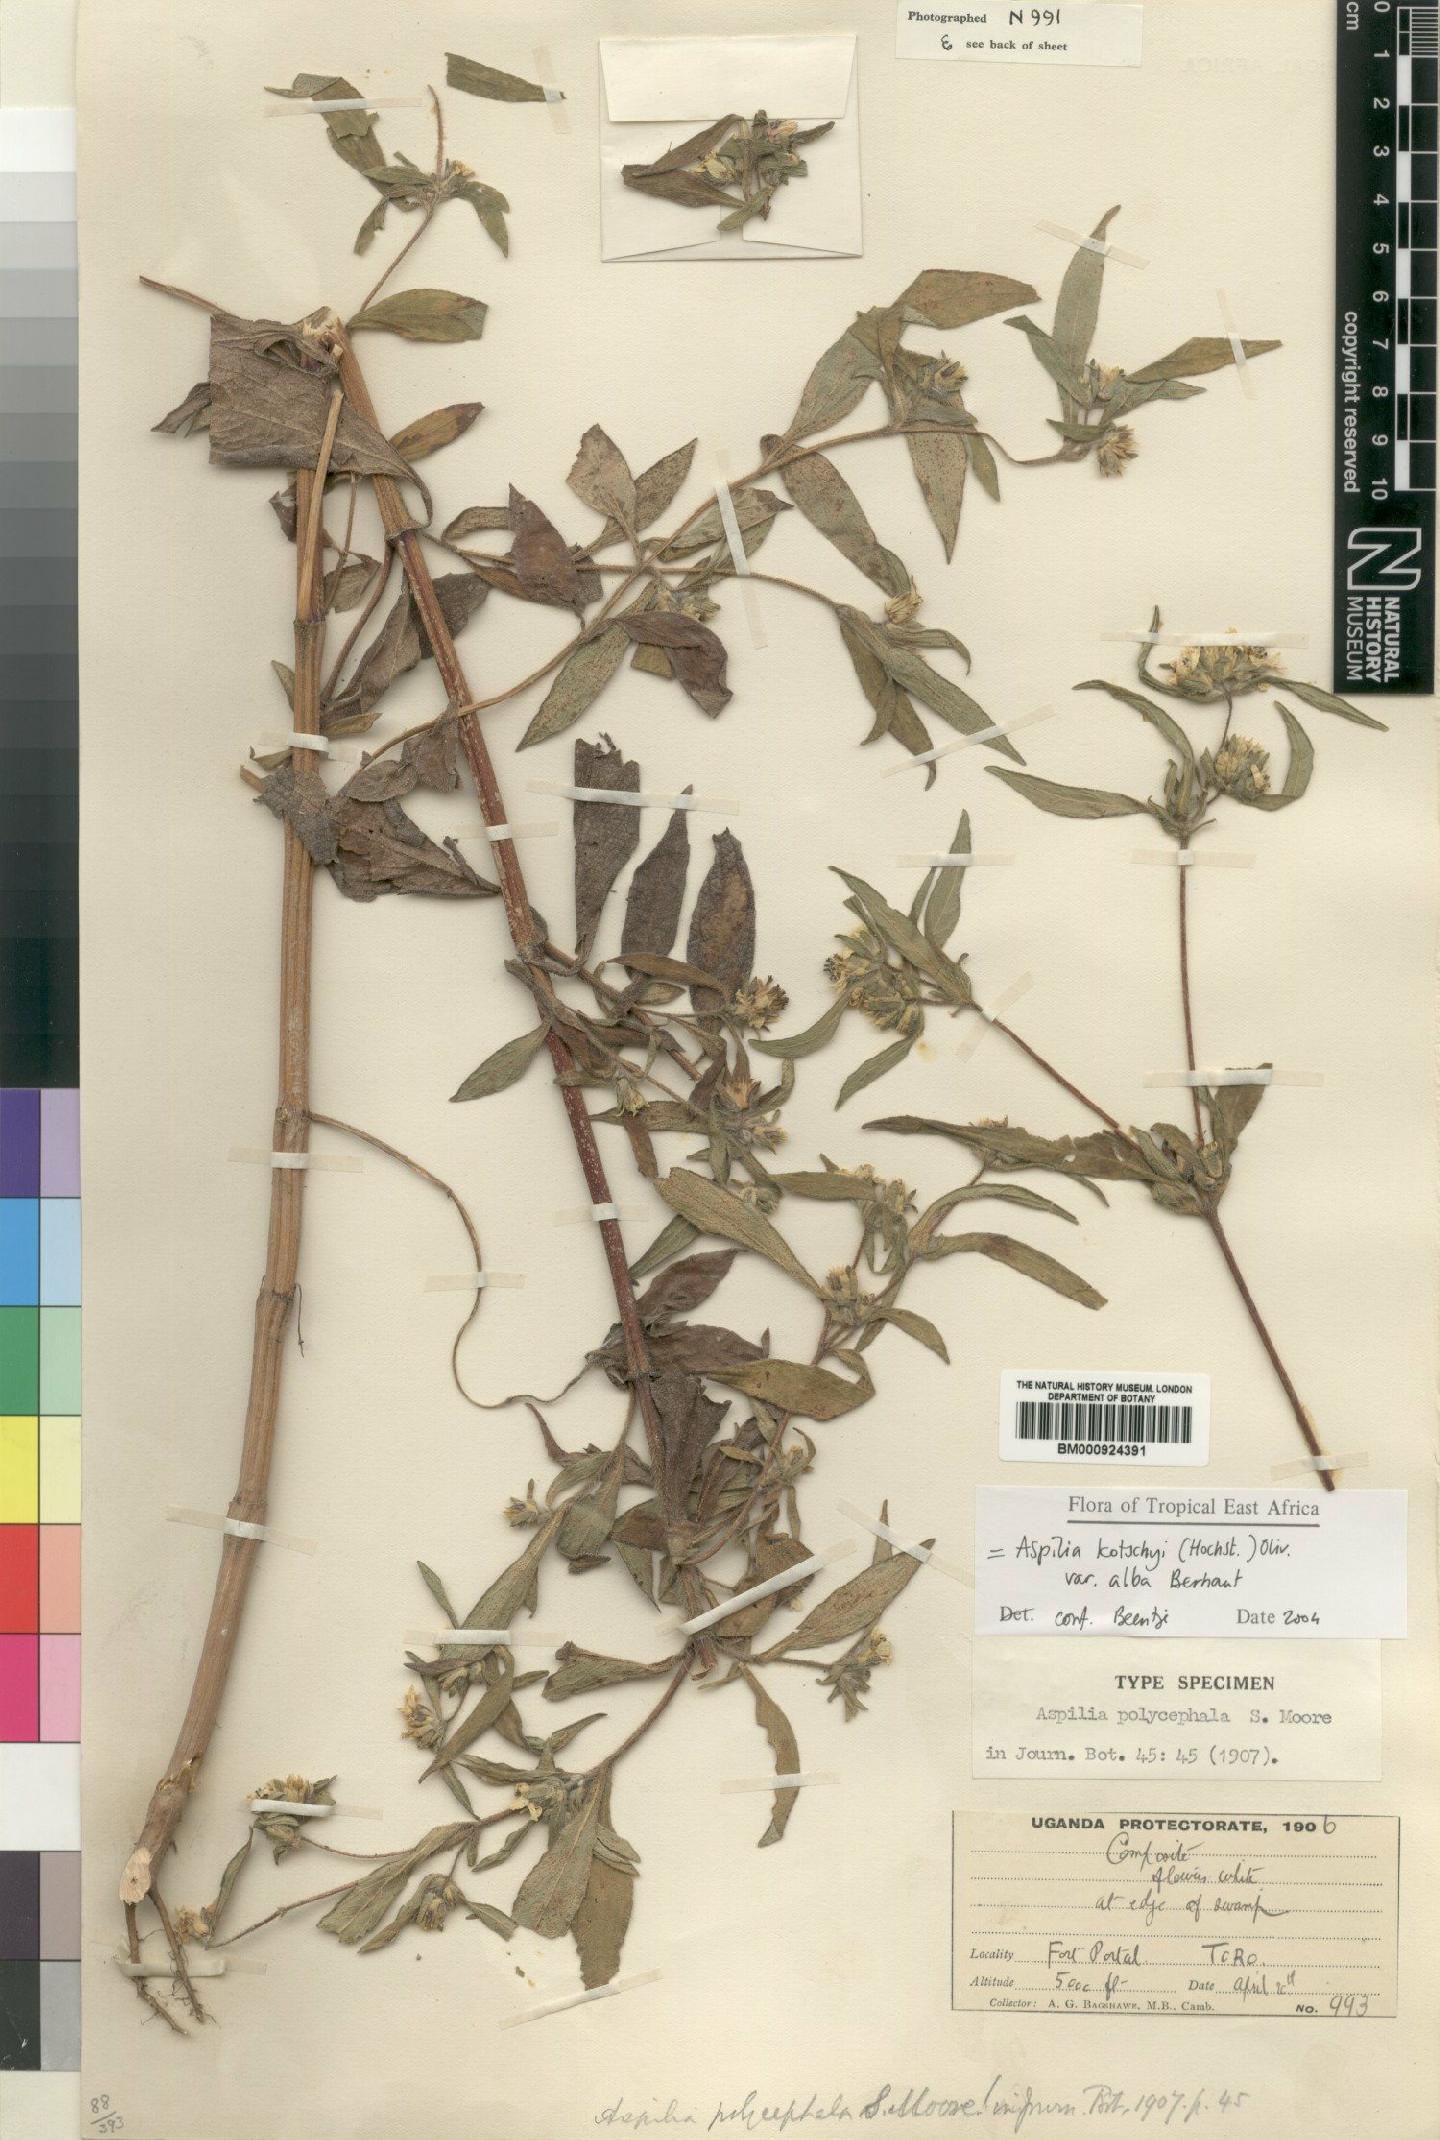 To NHMUK collection (Aspilia kotschyi var. alba Berhaut; Type; NHMUK:ecatalogue:4529419)